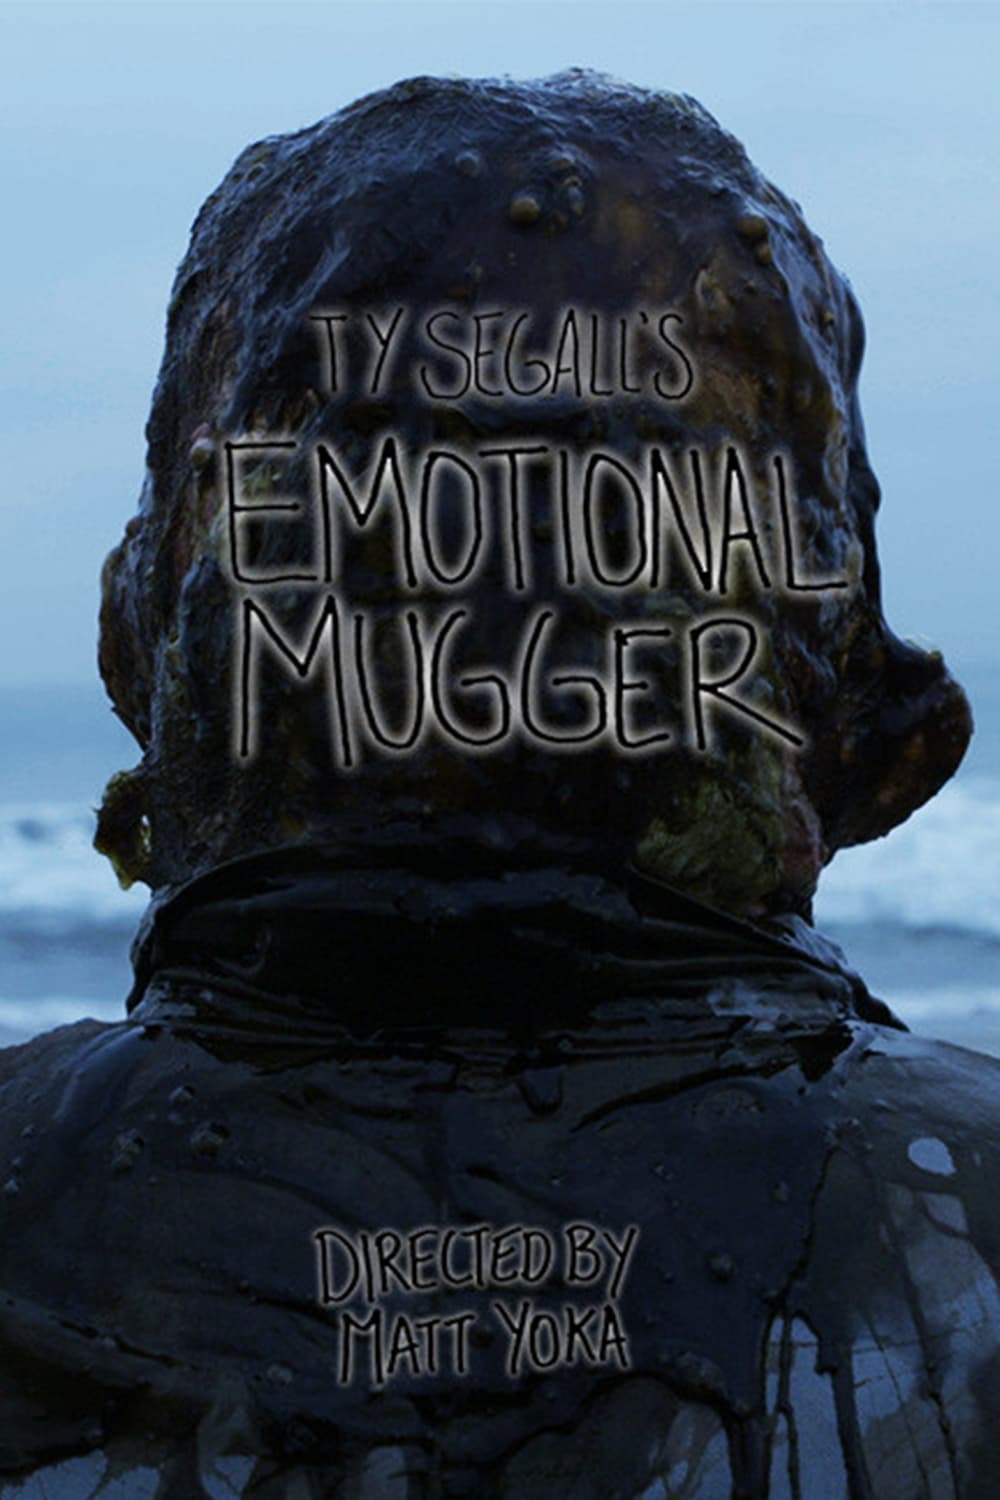 Ty Segall's Emotional Mugger